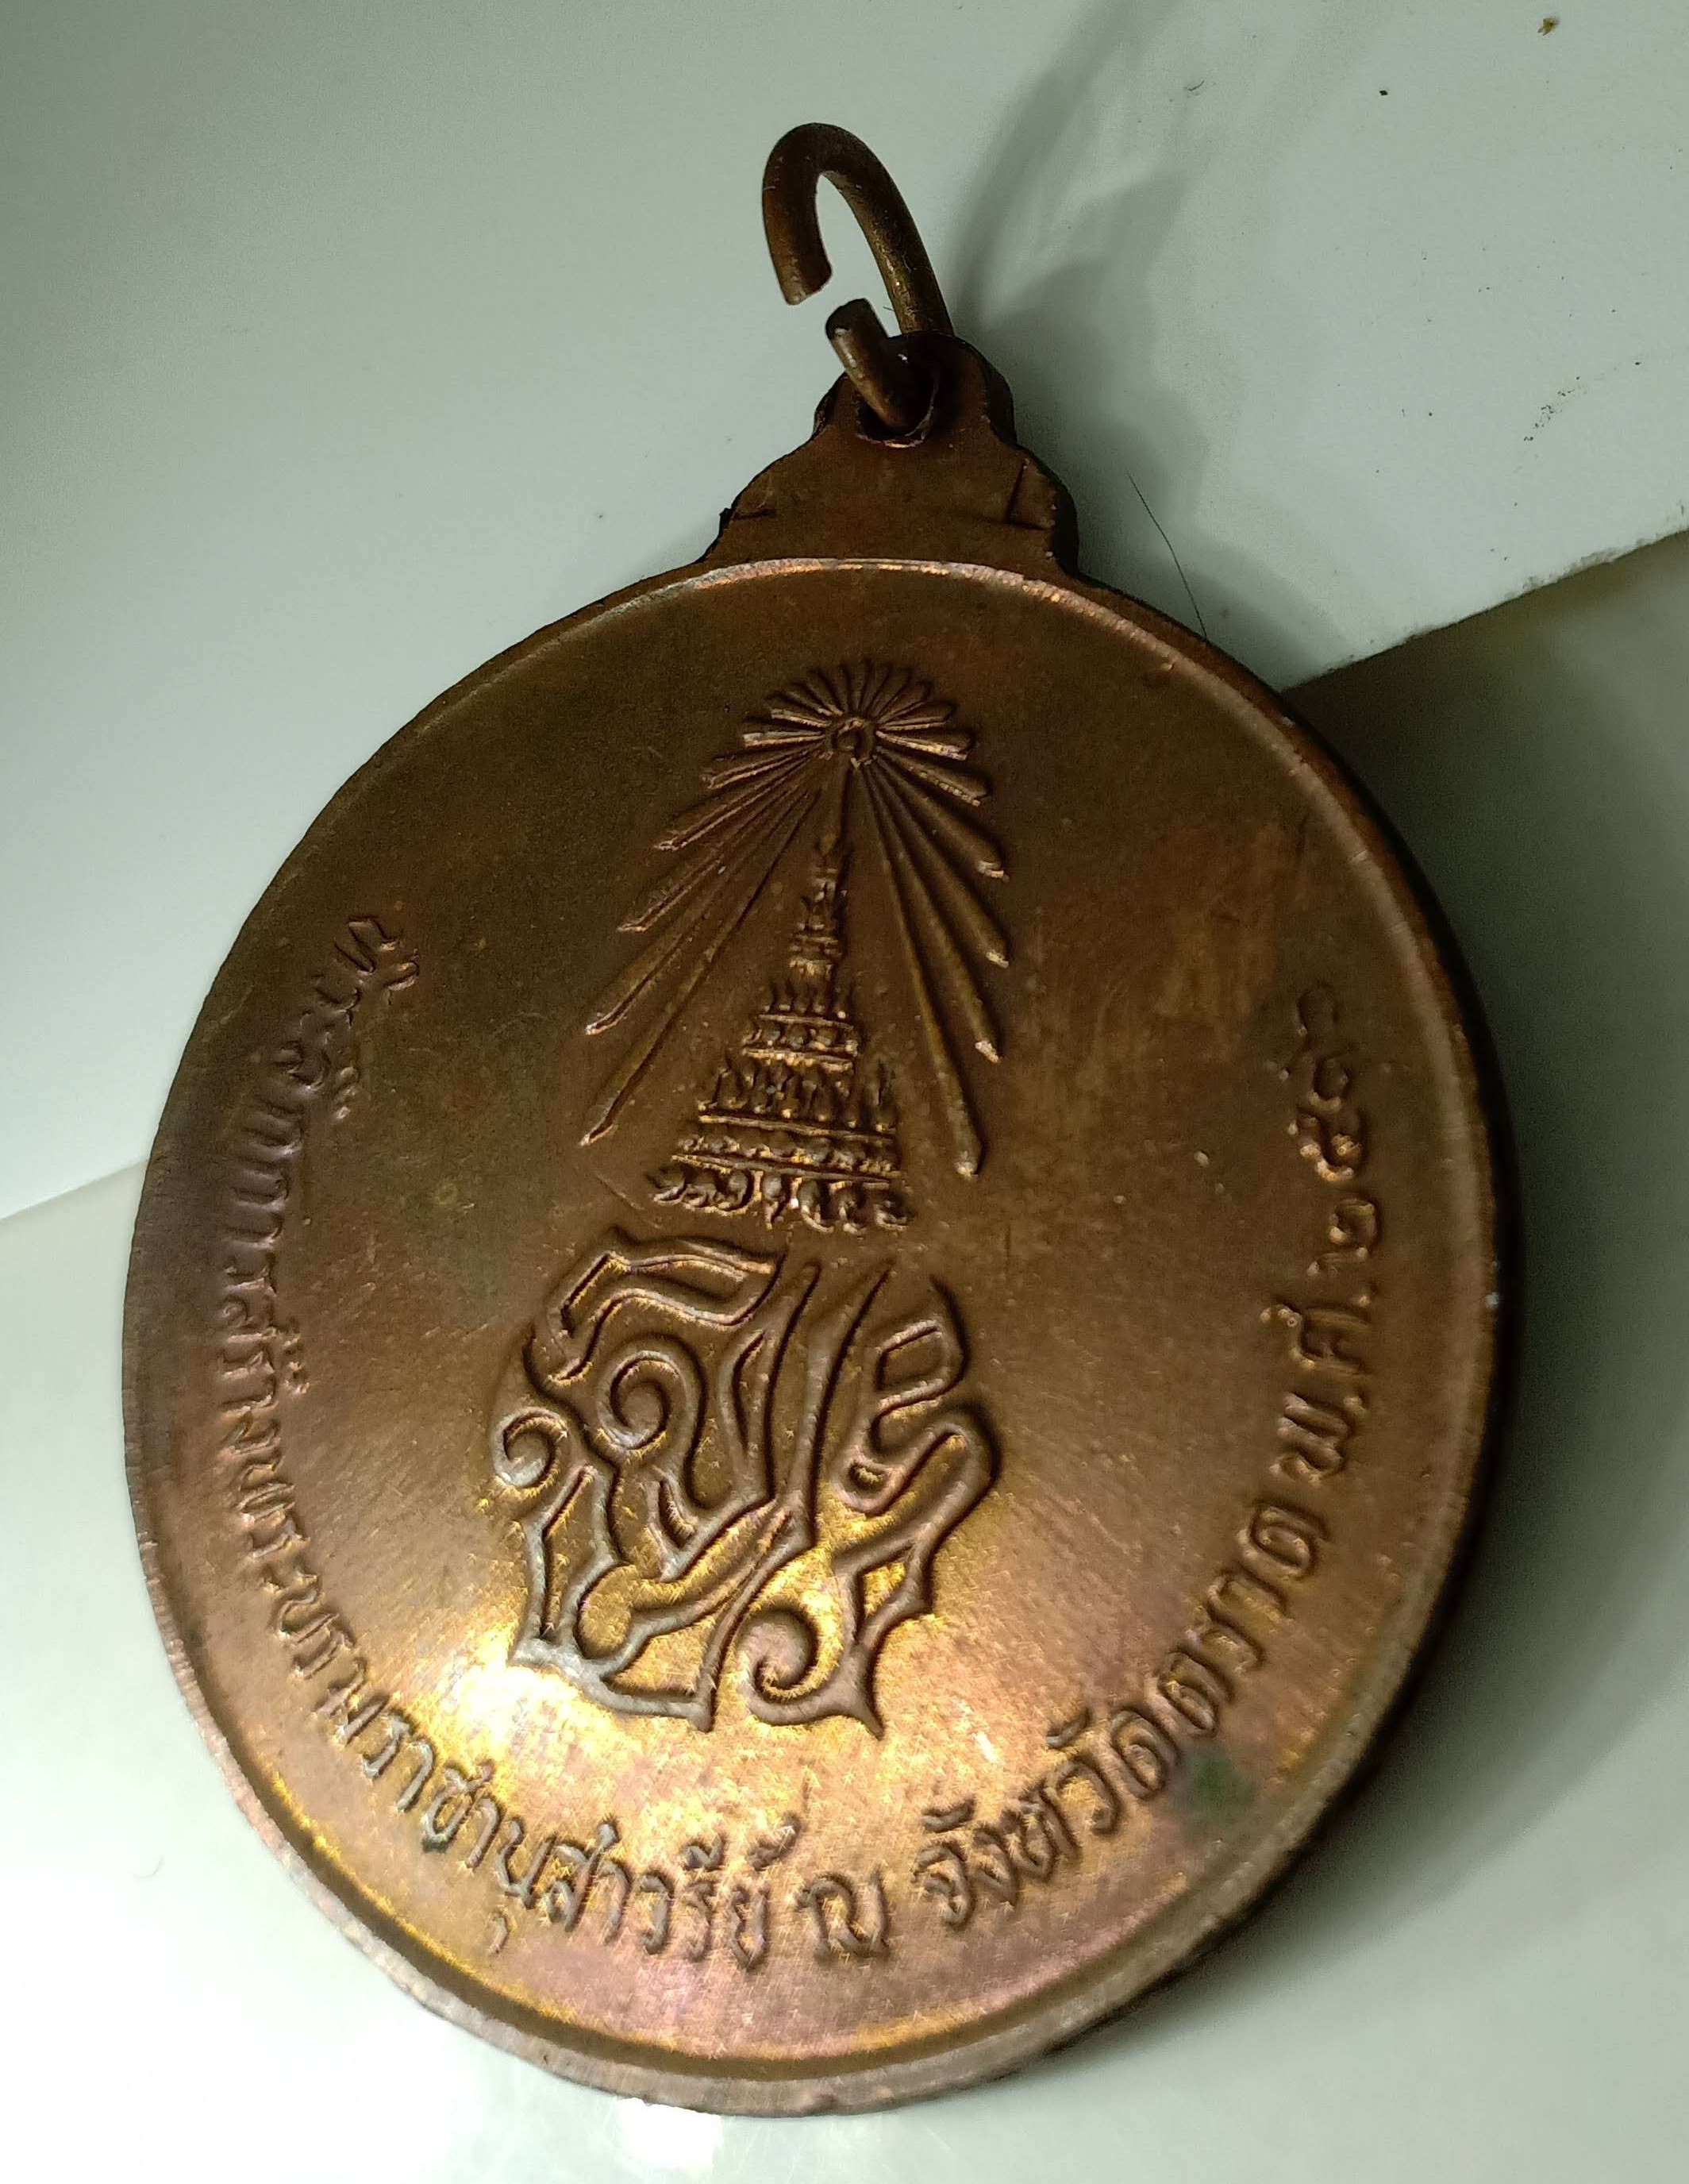 เหรียญ ร.5 ปี16 จ.ตราด เหรียญที่ระลึกรัชกาลที่ 5 เนื้อทองแดง พิมพ์เล็ก รุ่น 111 ปี ตราดรำลึก ปี 2516 เครื่อง	เหรียญ ร.5 ที่ระลึกสร้างอนุสาวรีย์ ณ.จังหวัดตราด ปี 2516 รูปที่ 1